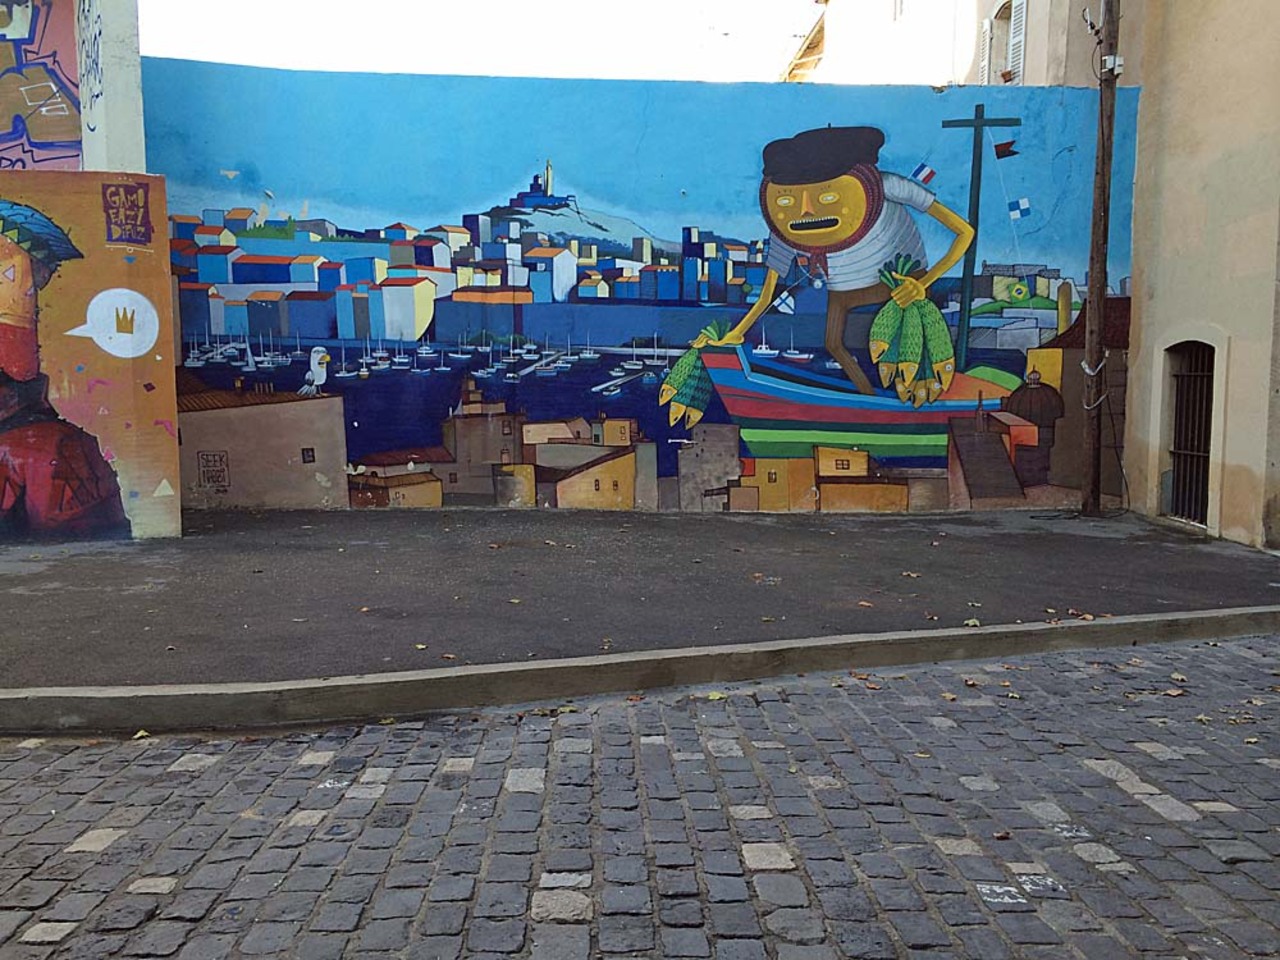 https://goo.gl/t4fpx2 New blog post #Marseille #streetart #graffiti #art South of #France … https://t.co/VL7n418Mx6